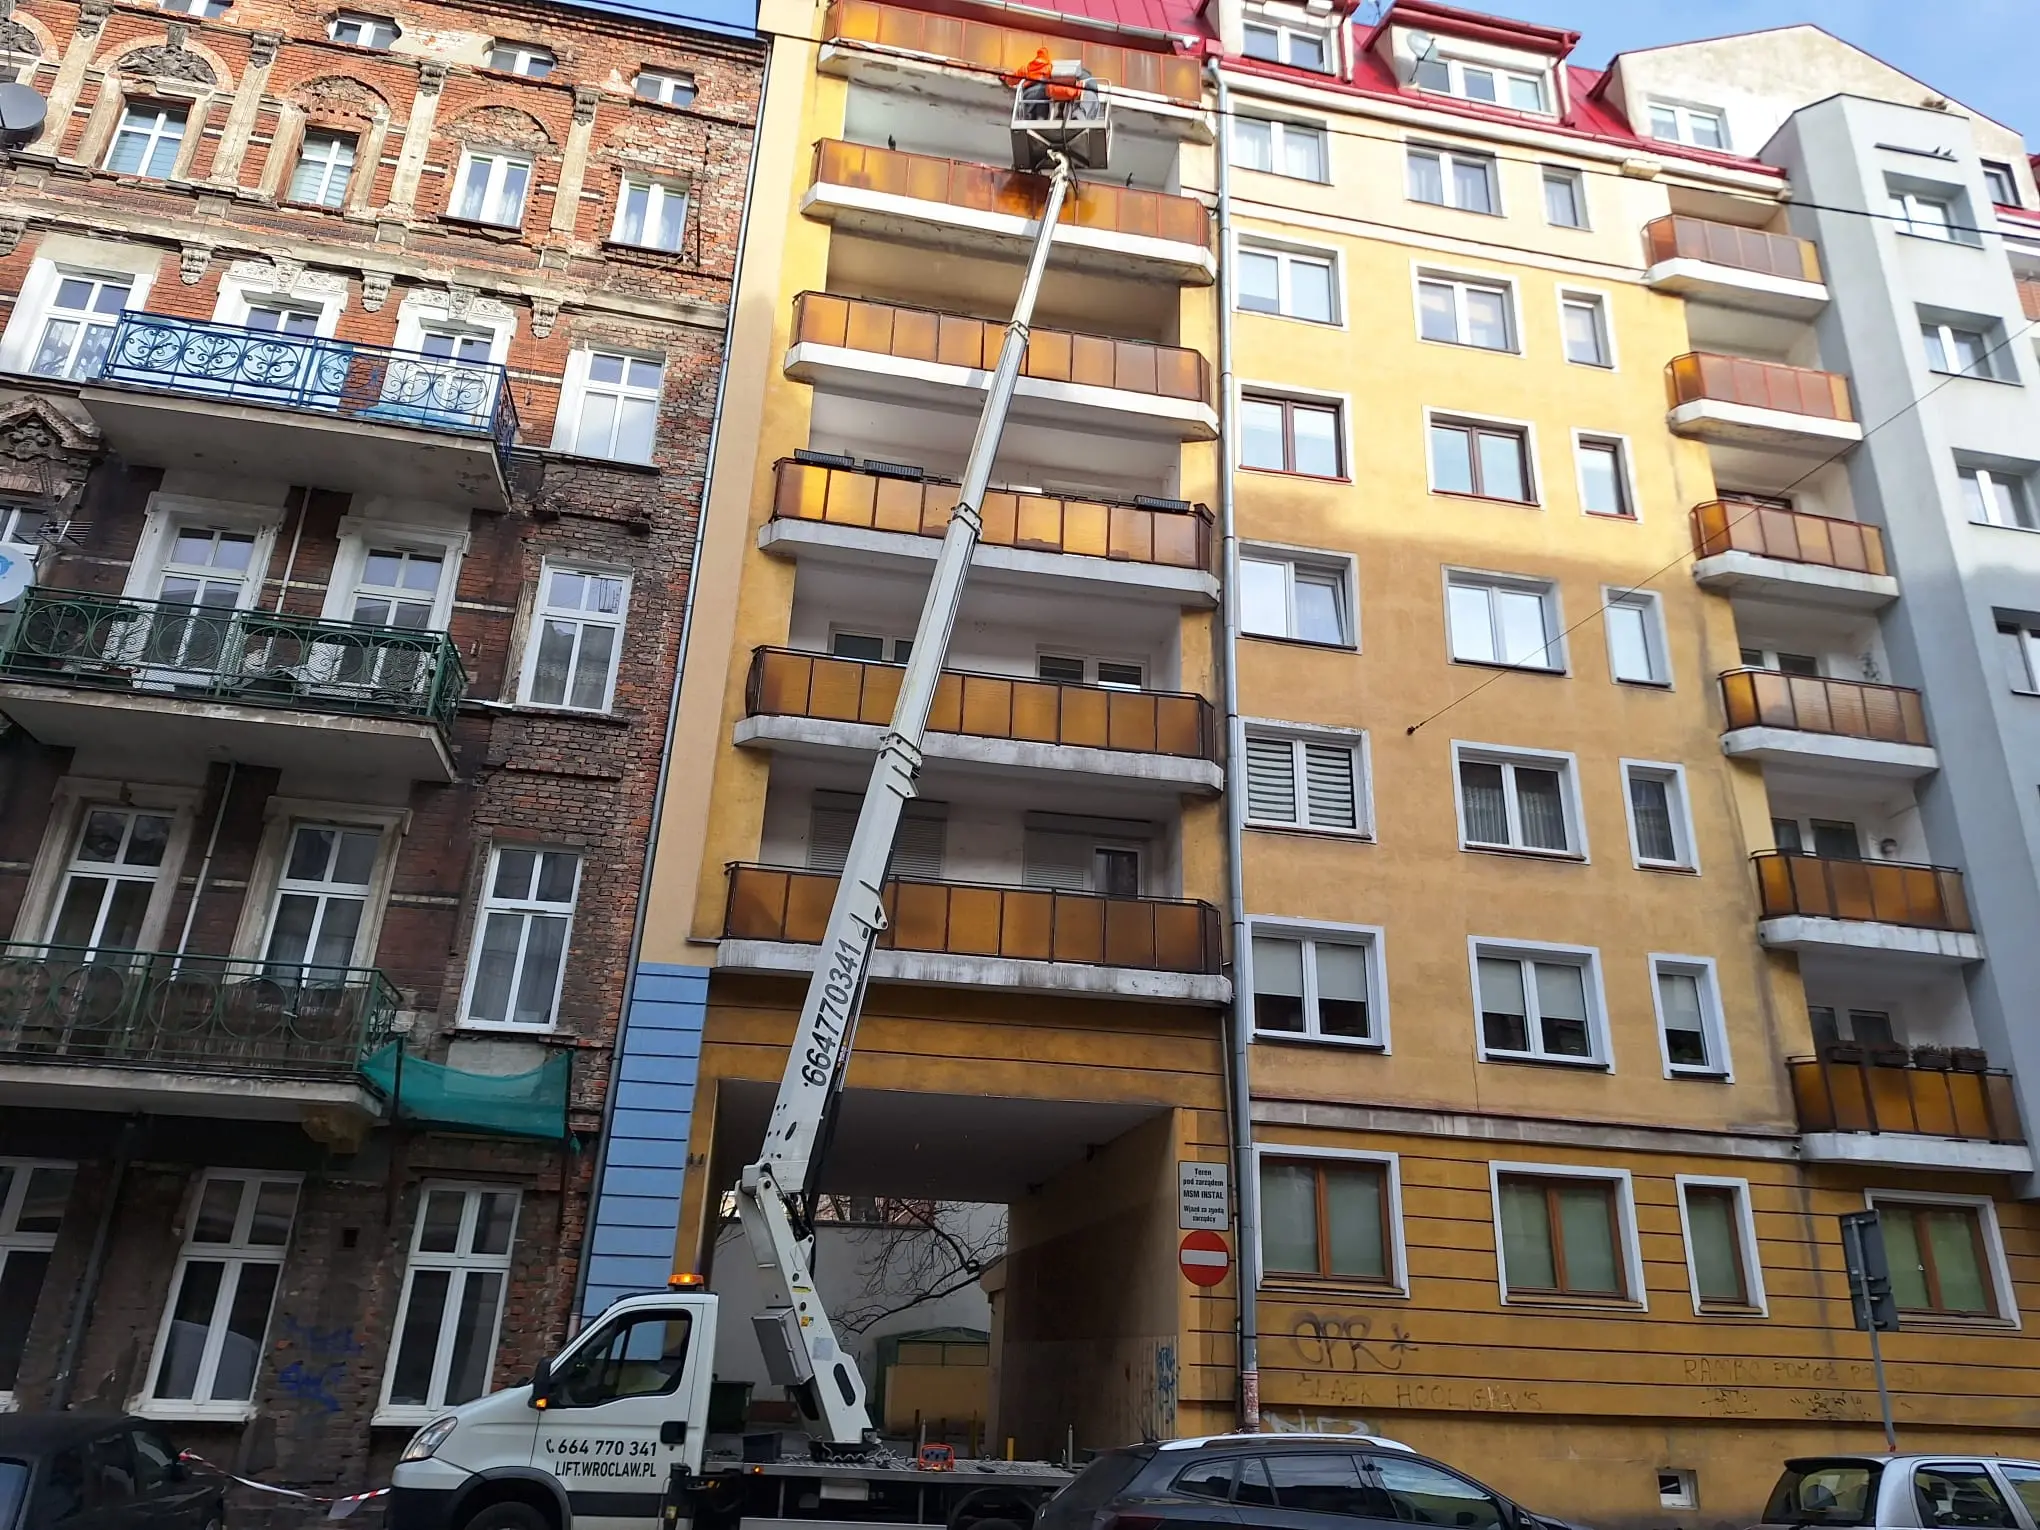 Prace przy elewacji budynku z użyciem zwyżki we Wrocławiu